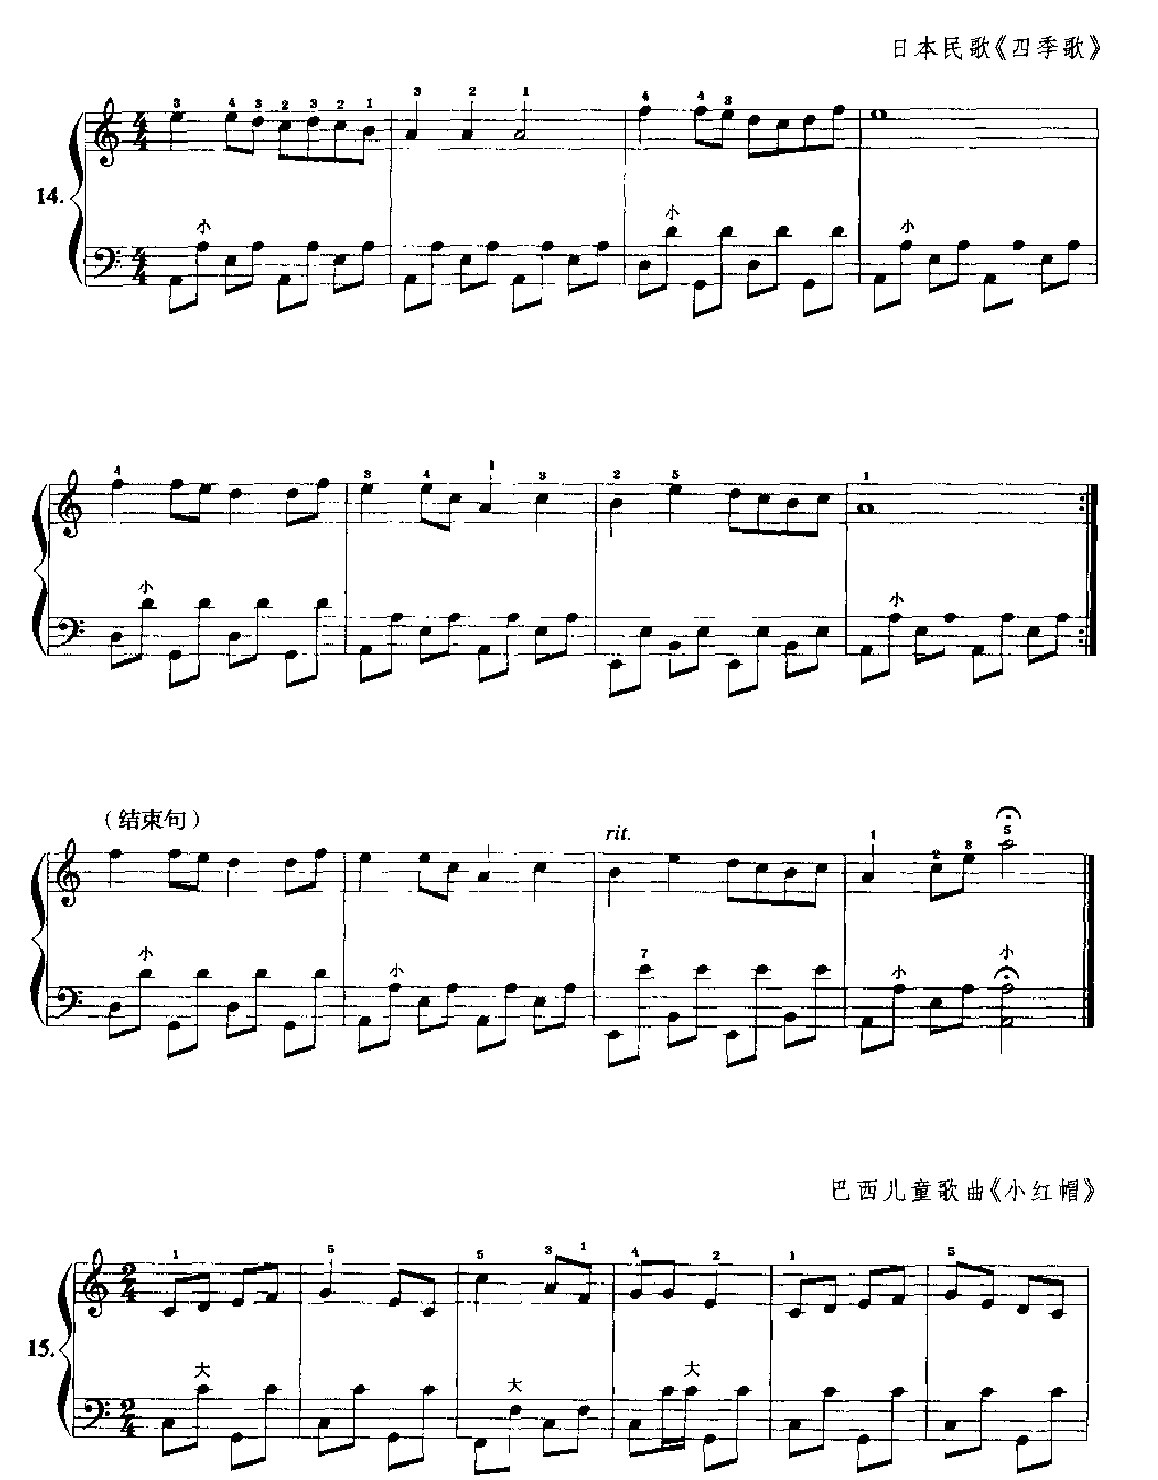 手风琴C大调音阶在键钮上的练习8